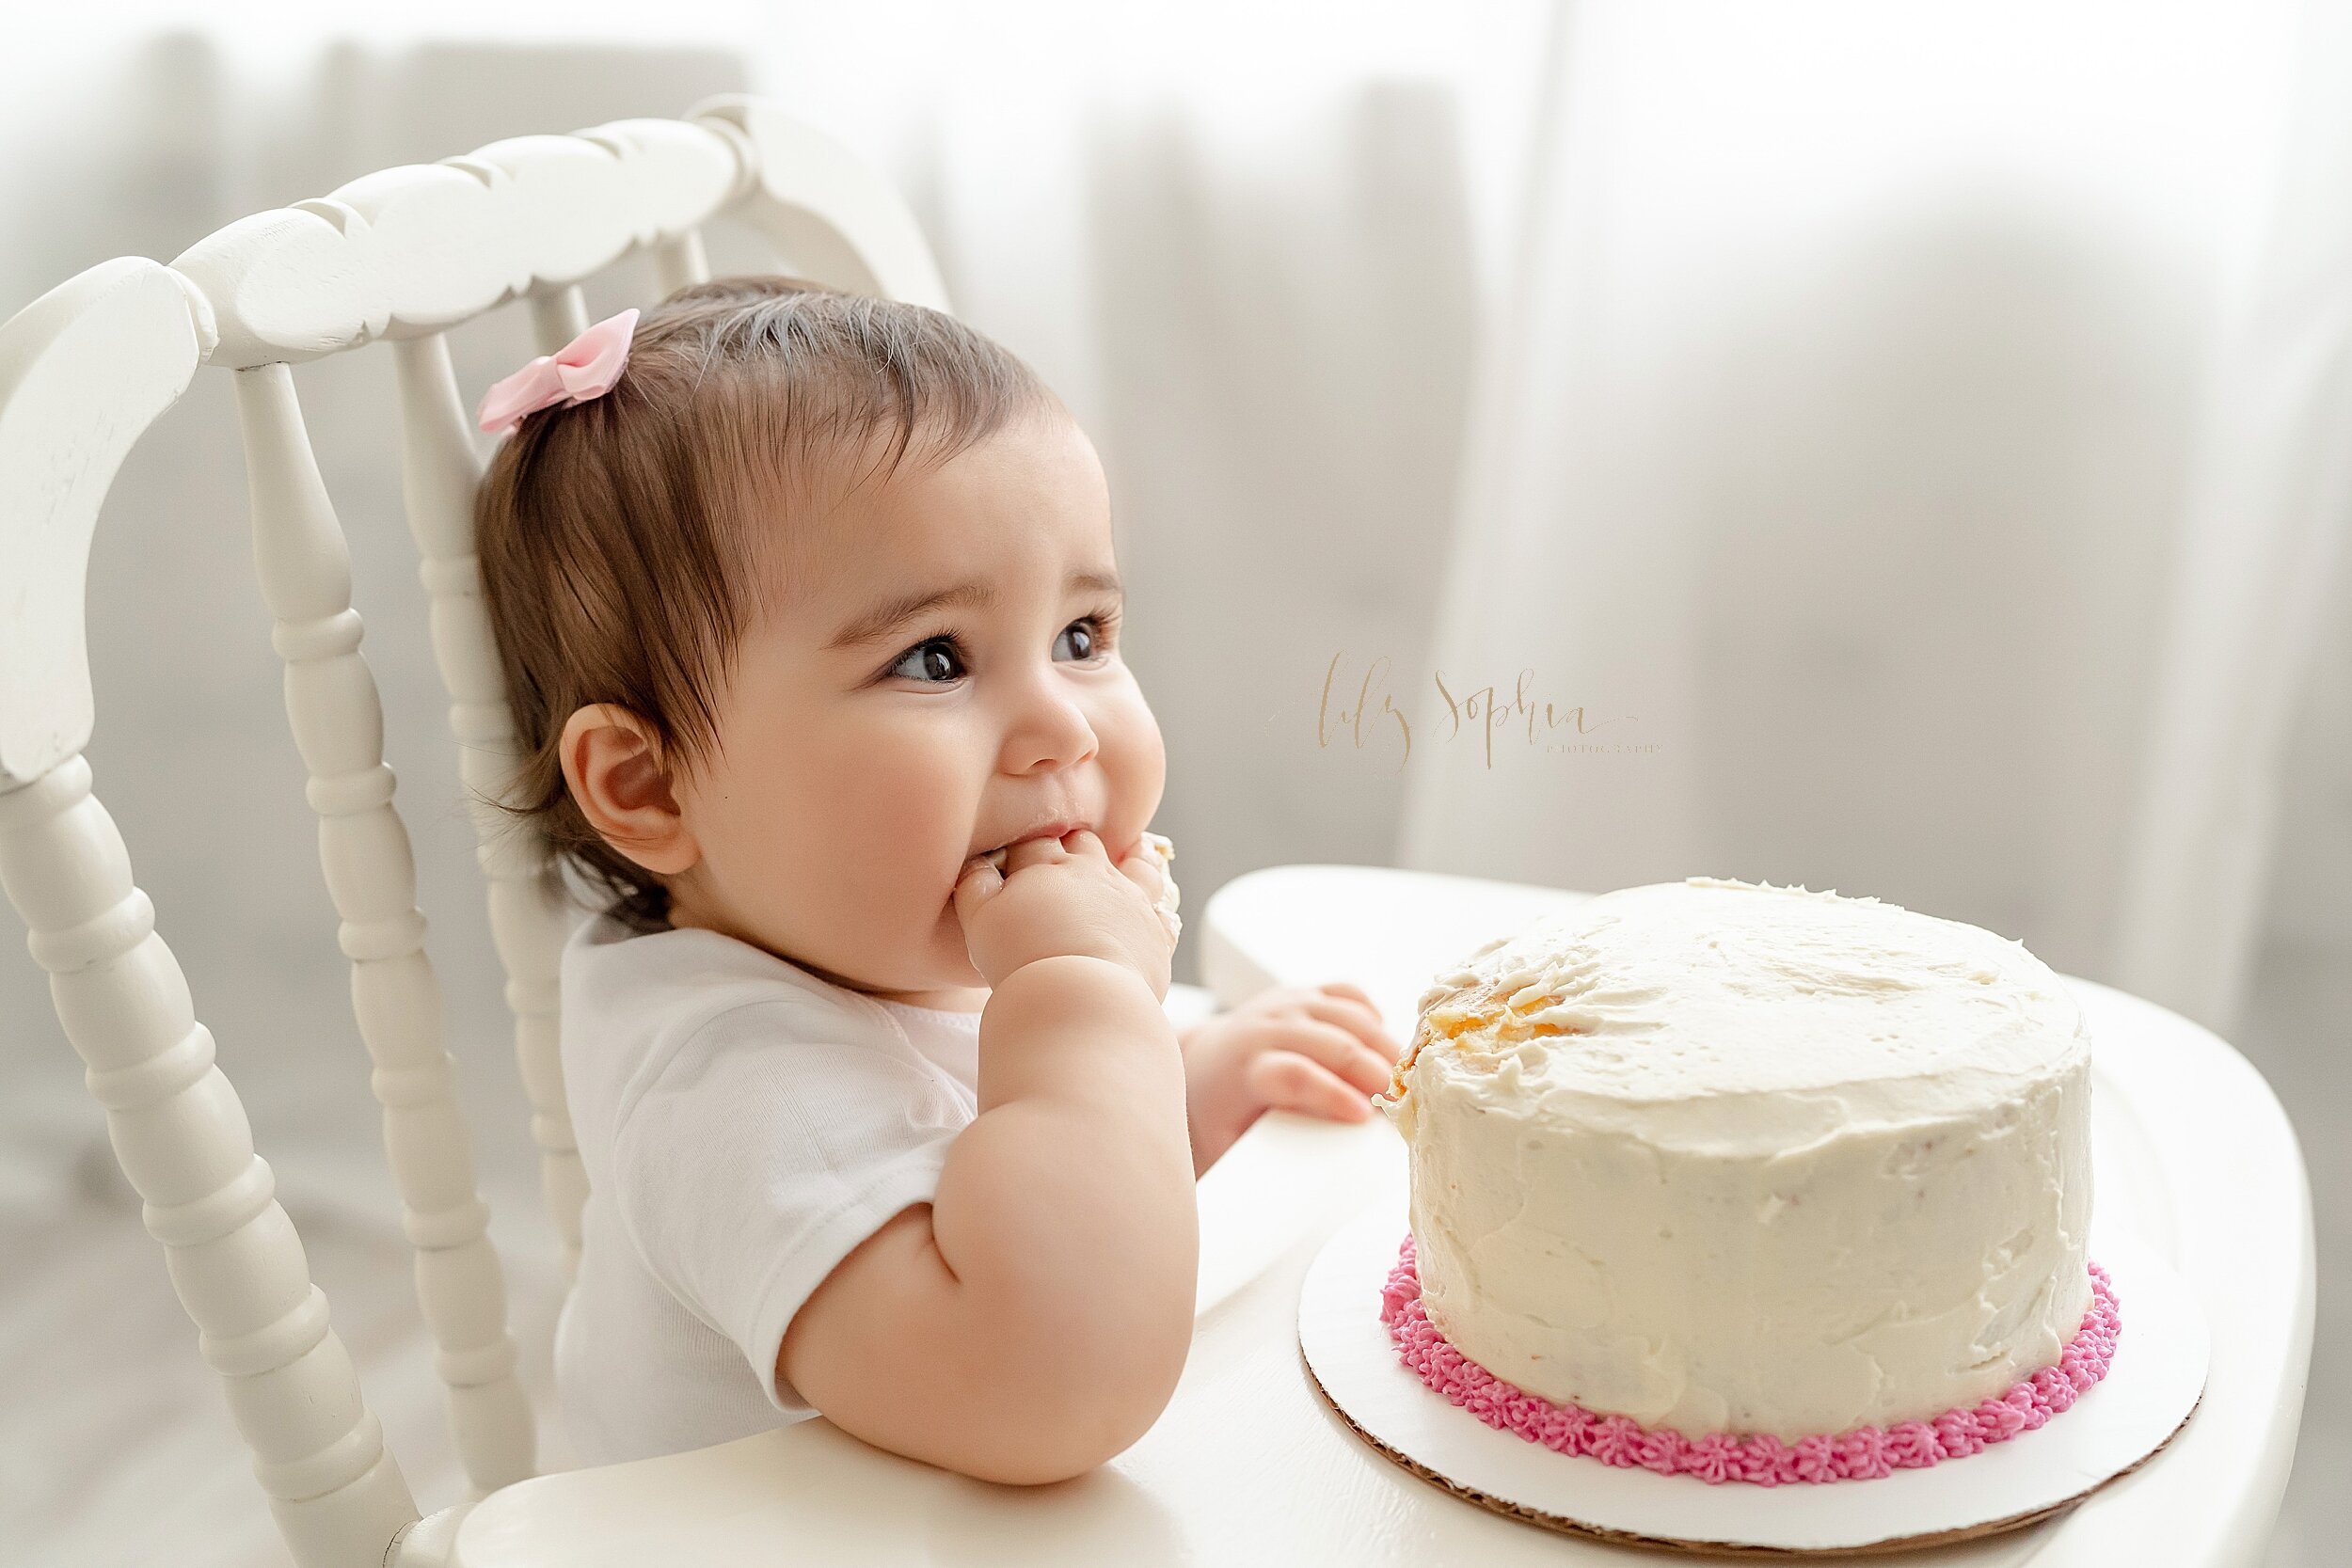 atlanta-georgia-buckhead-brookhaven-midtown-milestone-first-birthday-cake-smash-baby-girl-family-pictures_5639.jpg